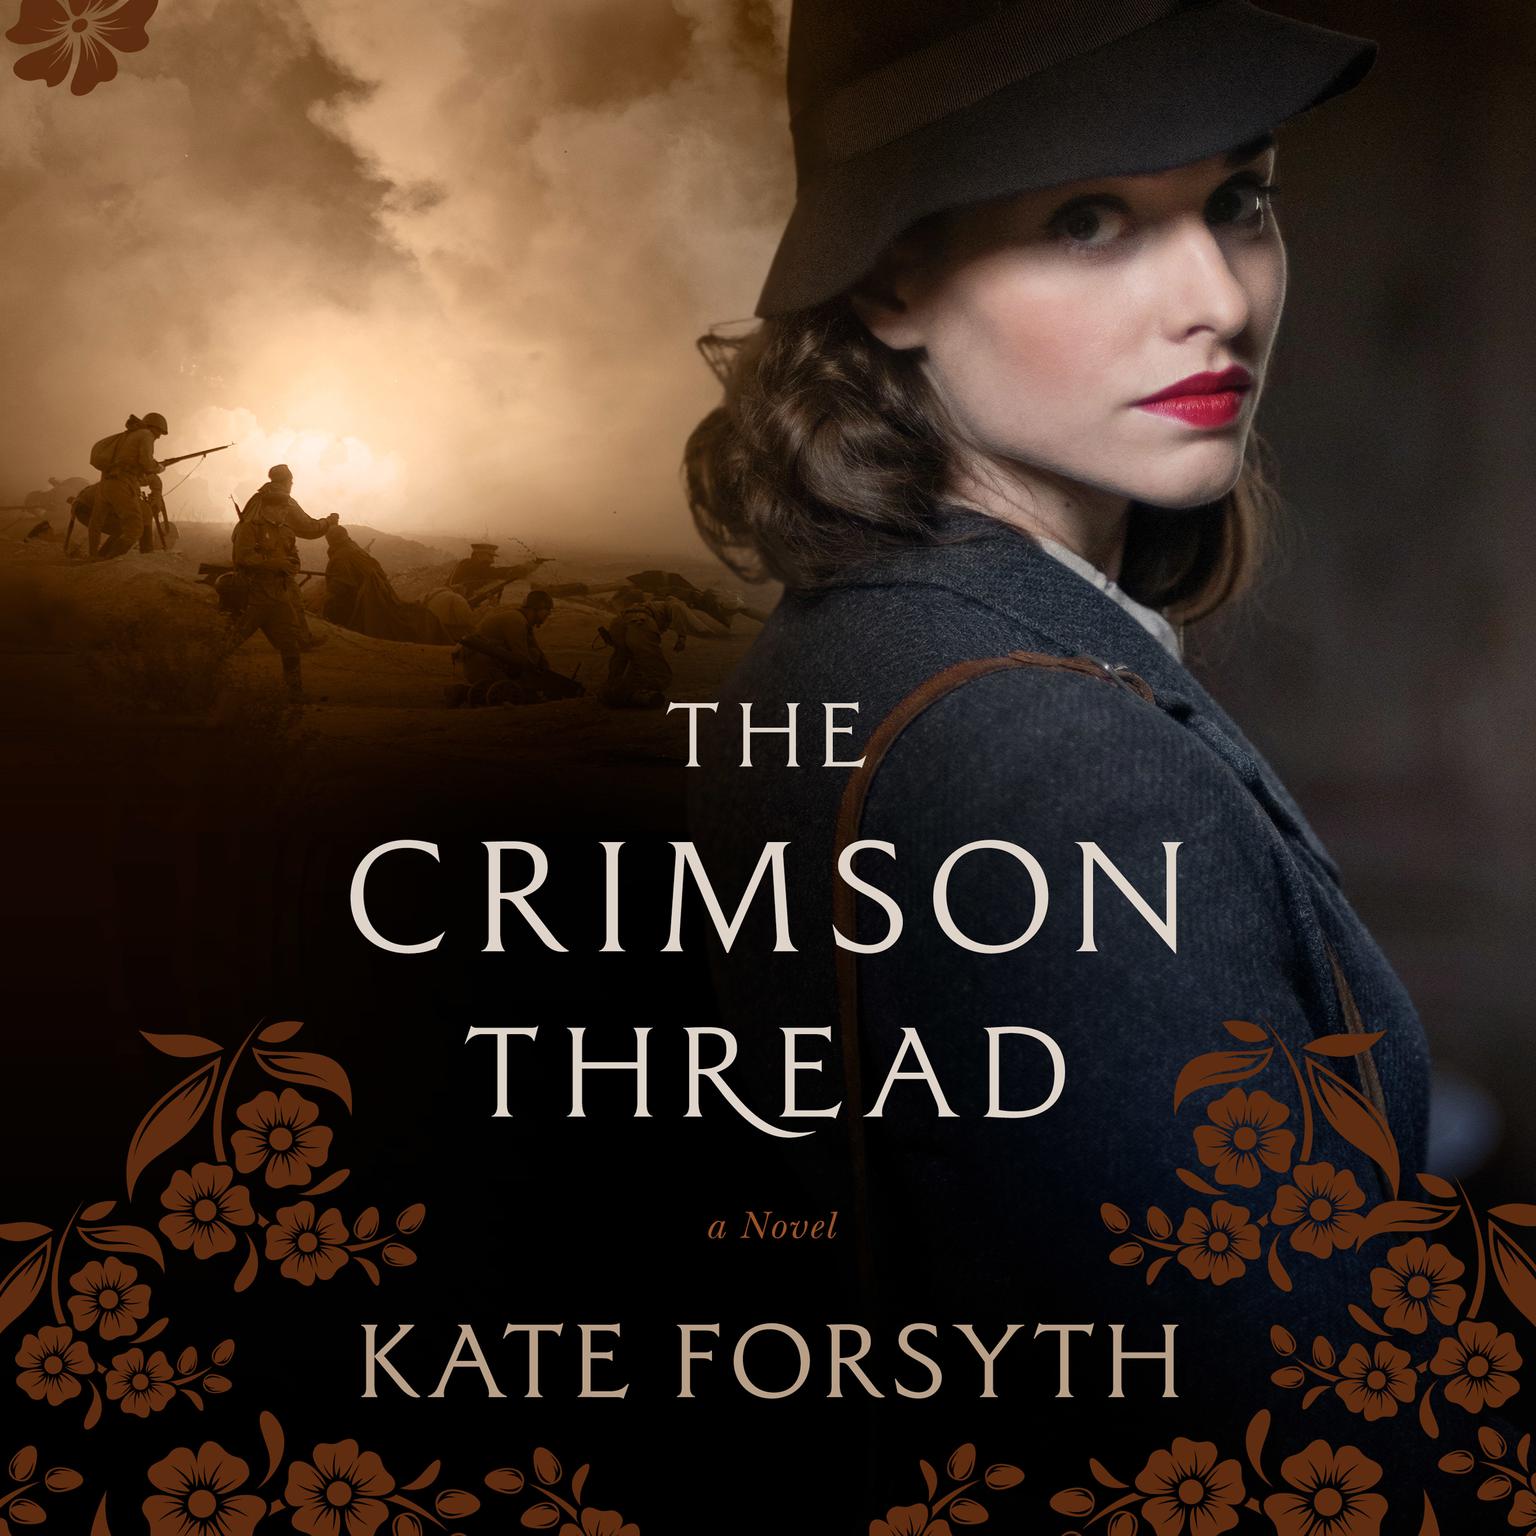 The Crimson Thread Audiobook, by Kate Forsyth